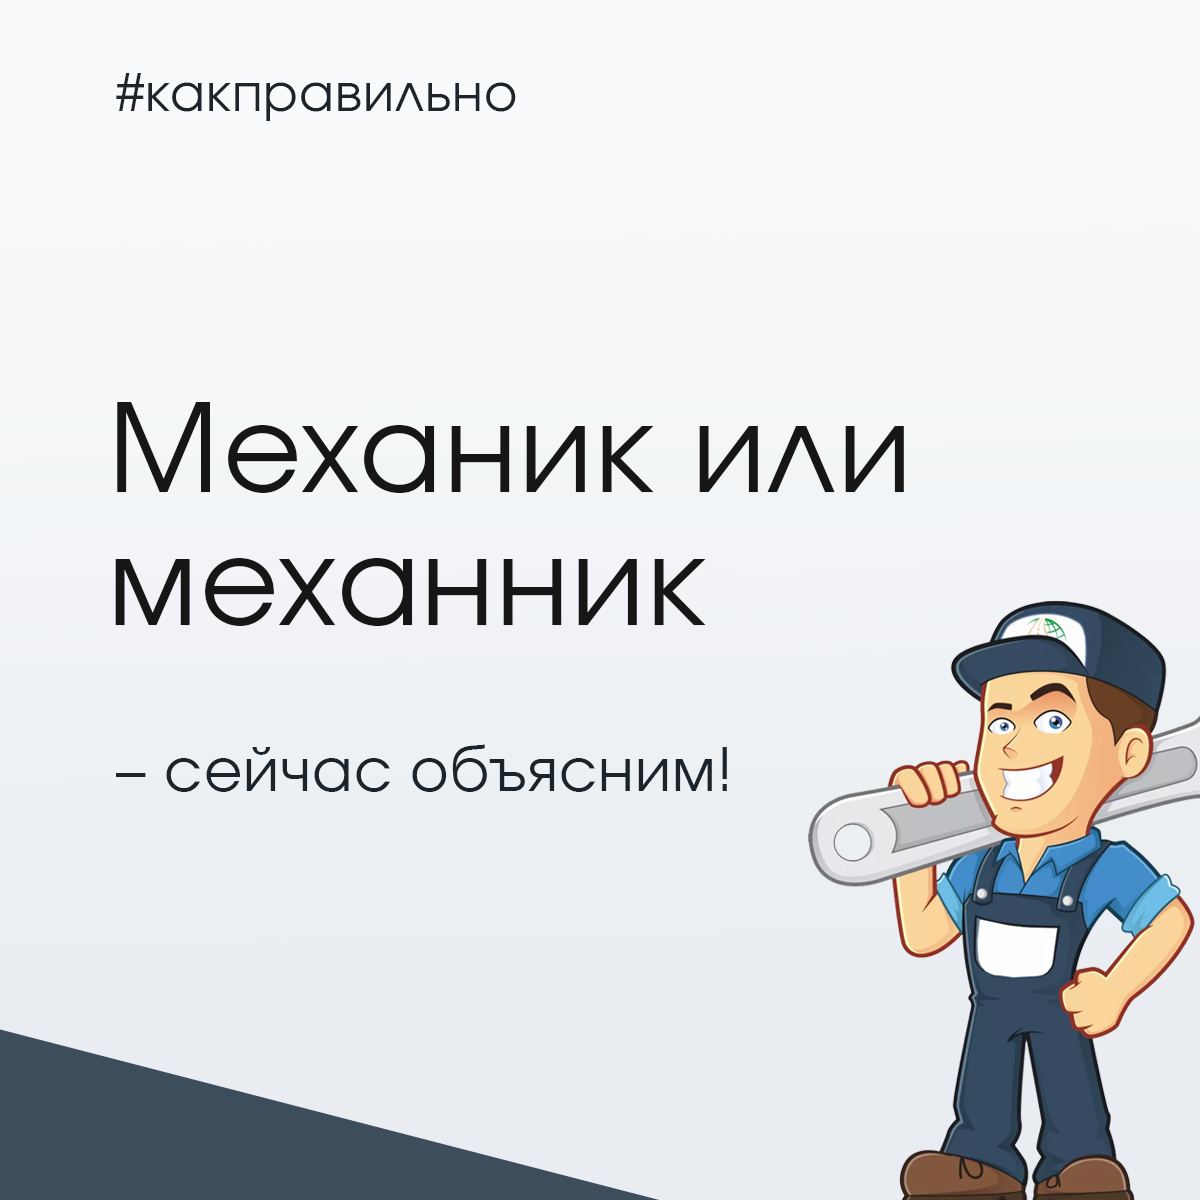 Как выбрать русский язык в телеграмм фото 39